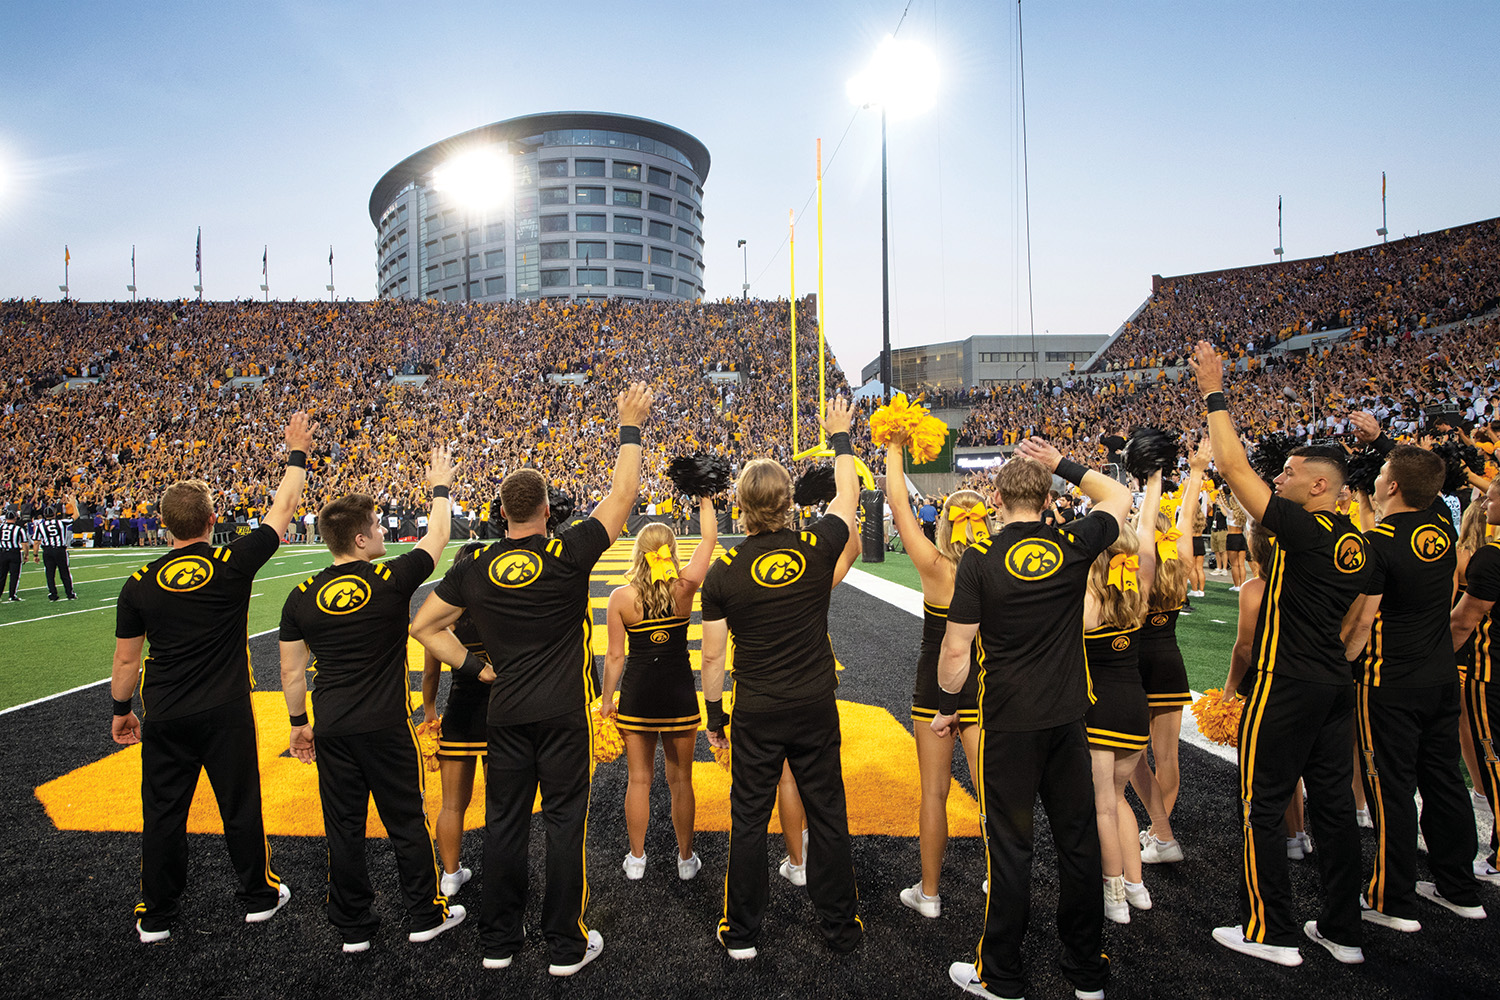 University of Iowa Cheerleaders wave to crowd at stadium